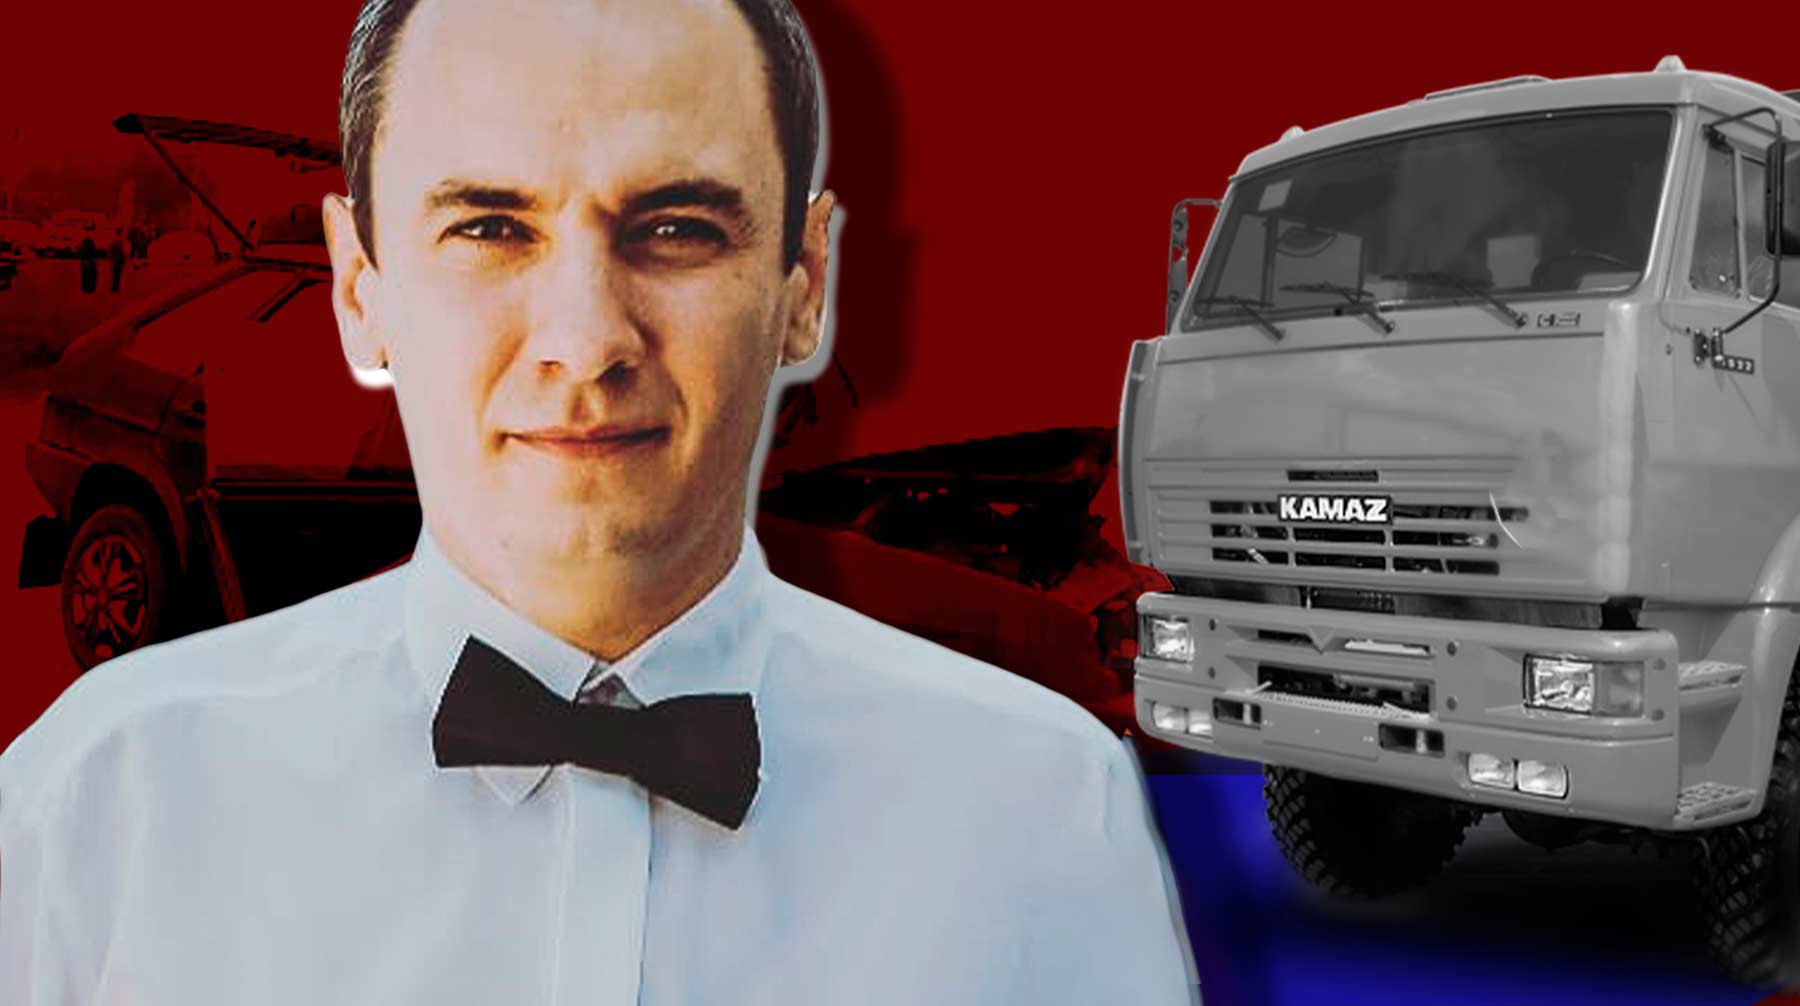 Dailystorm - «Виновника хотели порвать все»: водитель разбившегося на Ставрополье микроавтобуса рассказал, как столкнулся с грузовиком